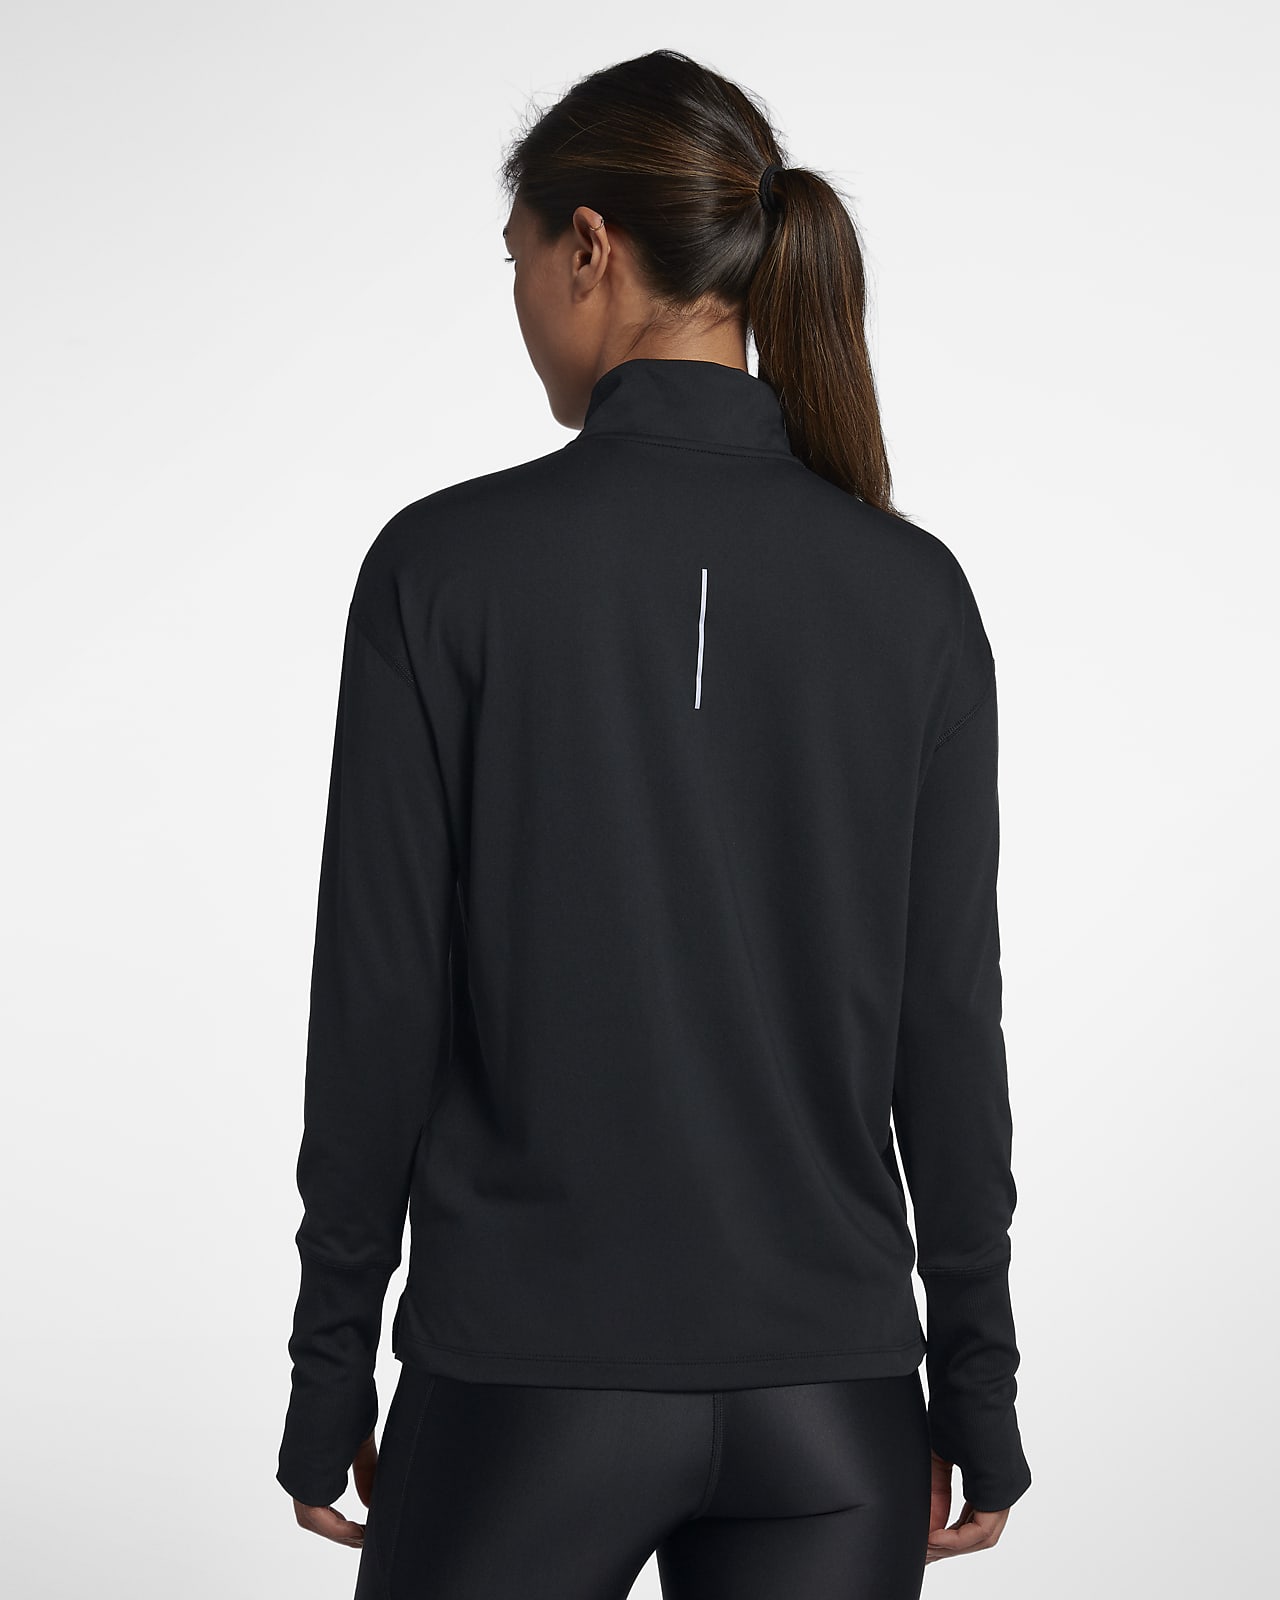 Nike Women's Half-Zip Running Top. Nike PT